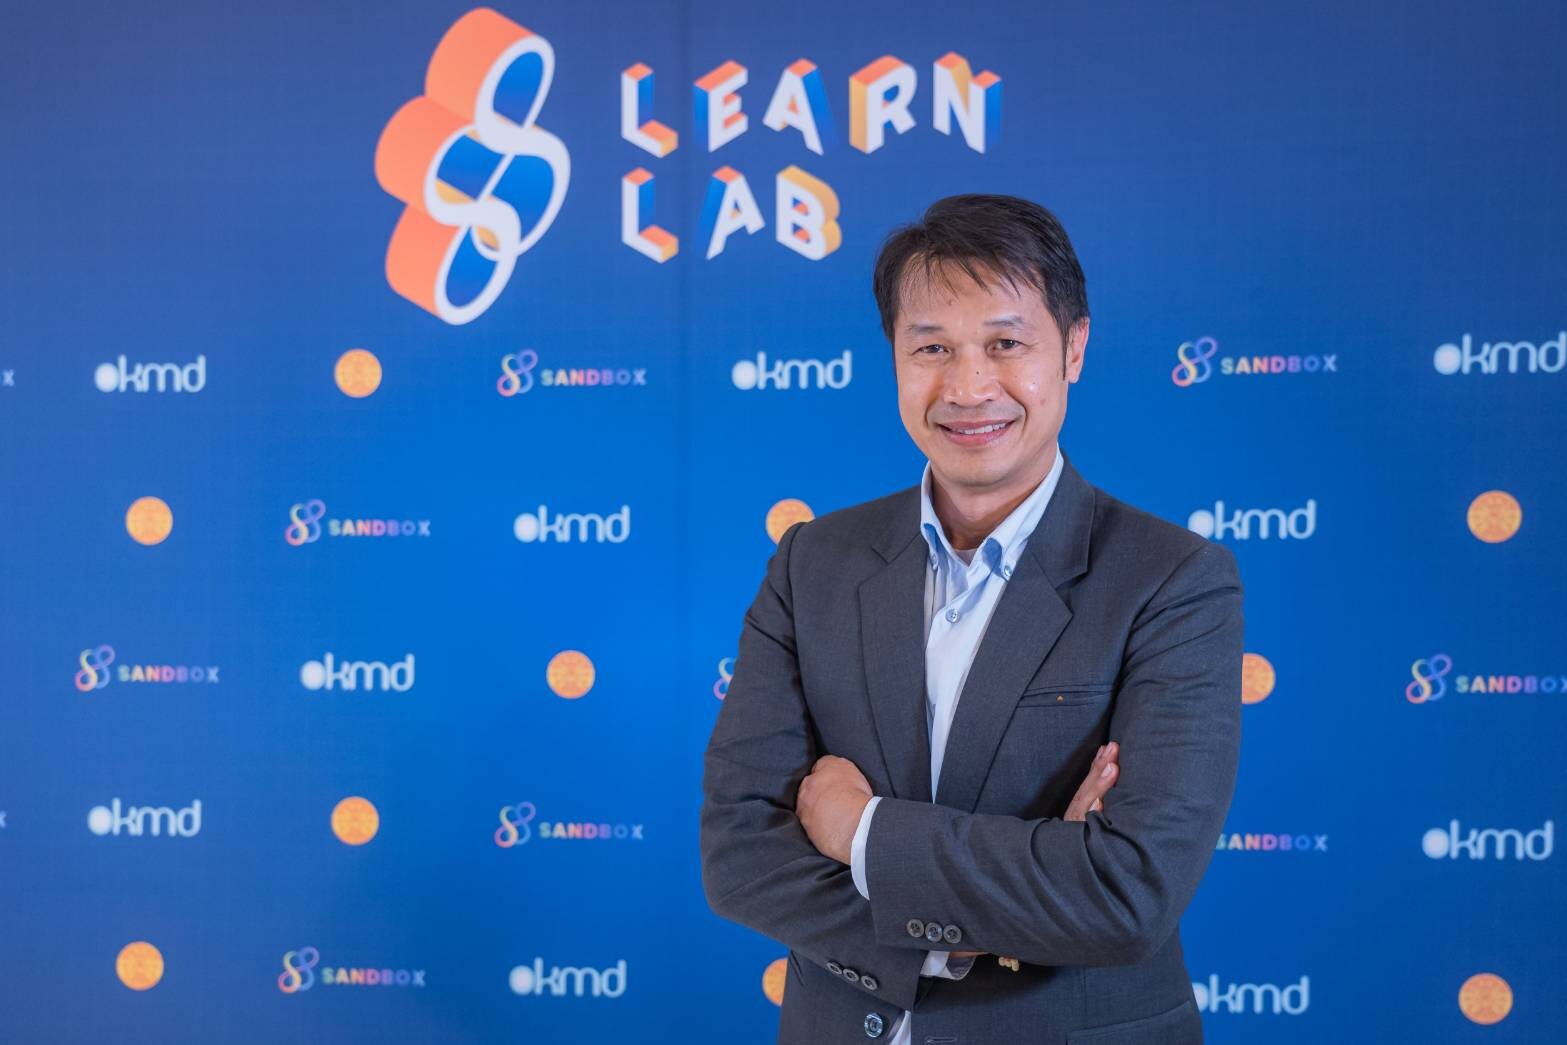 OKMD ร่วมกับ 88 SANDBOX ชวนไปงาน LEARN LAB EXPO มหกรรมตลาดการเรียนรู้ครั้งแรกในไทย